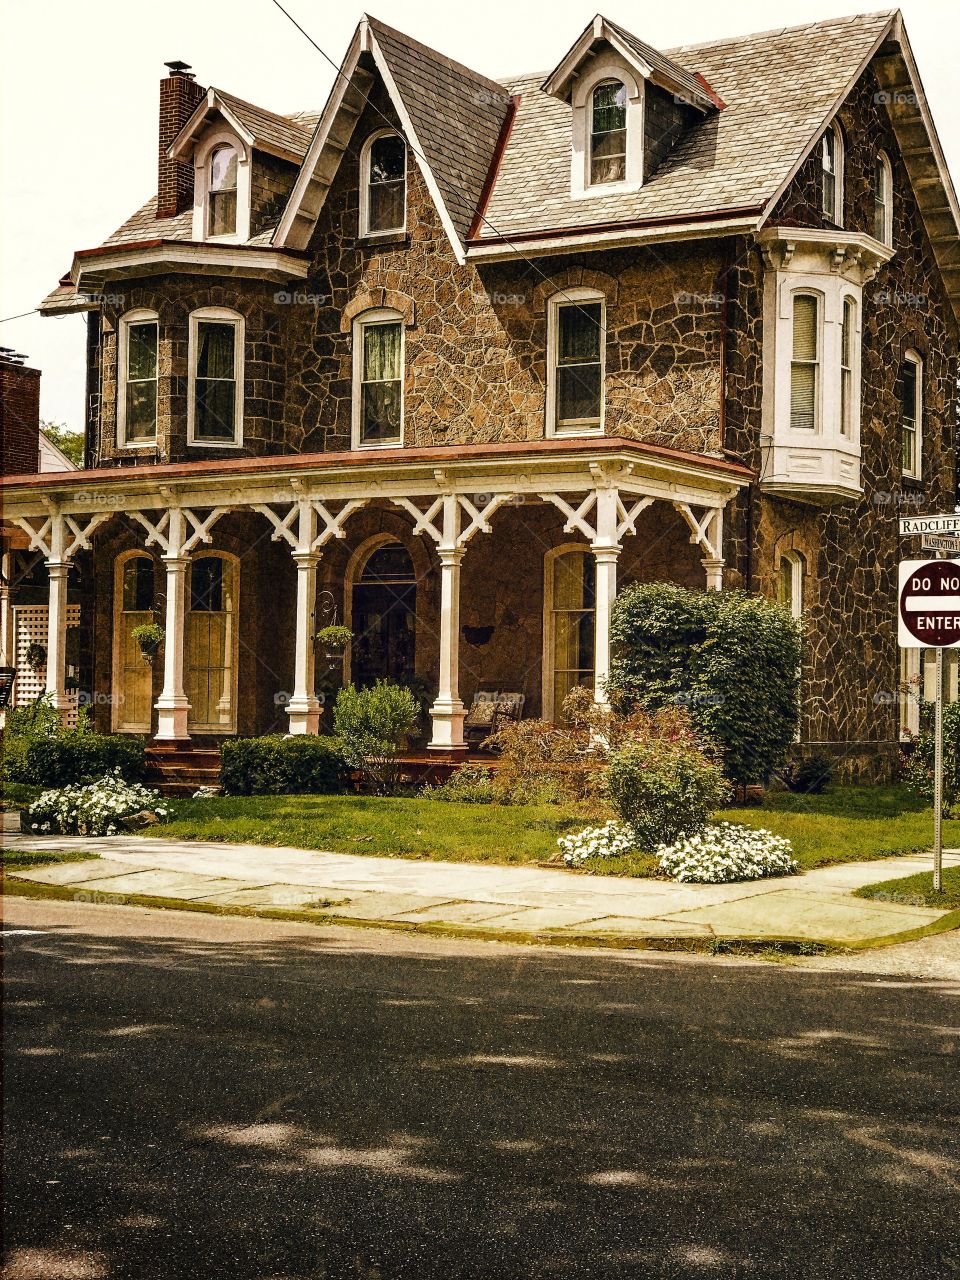 Portrait of a vintage home